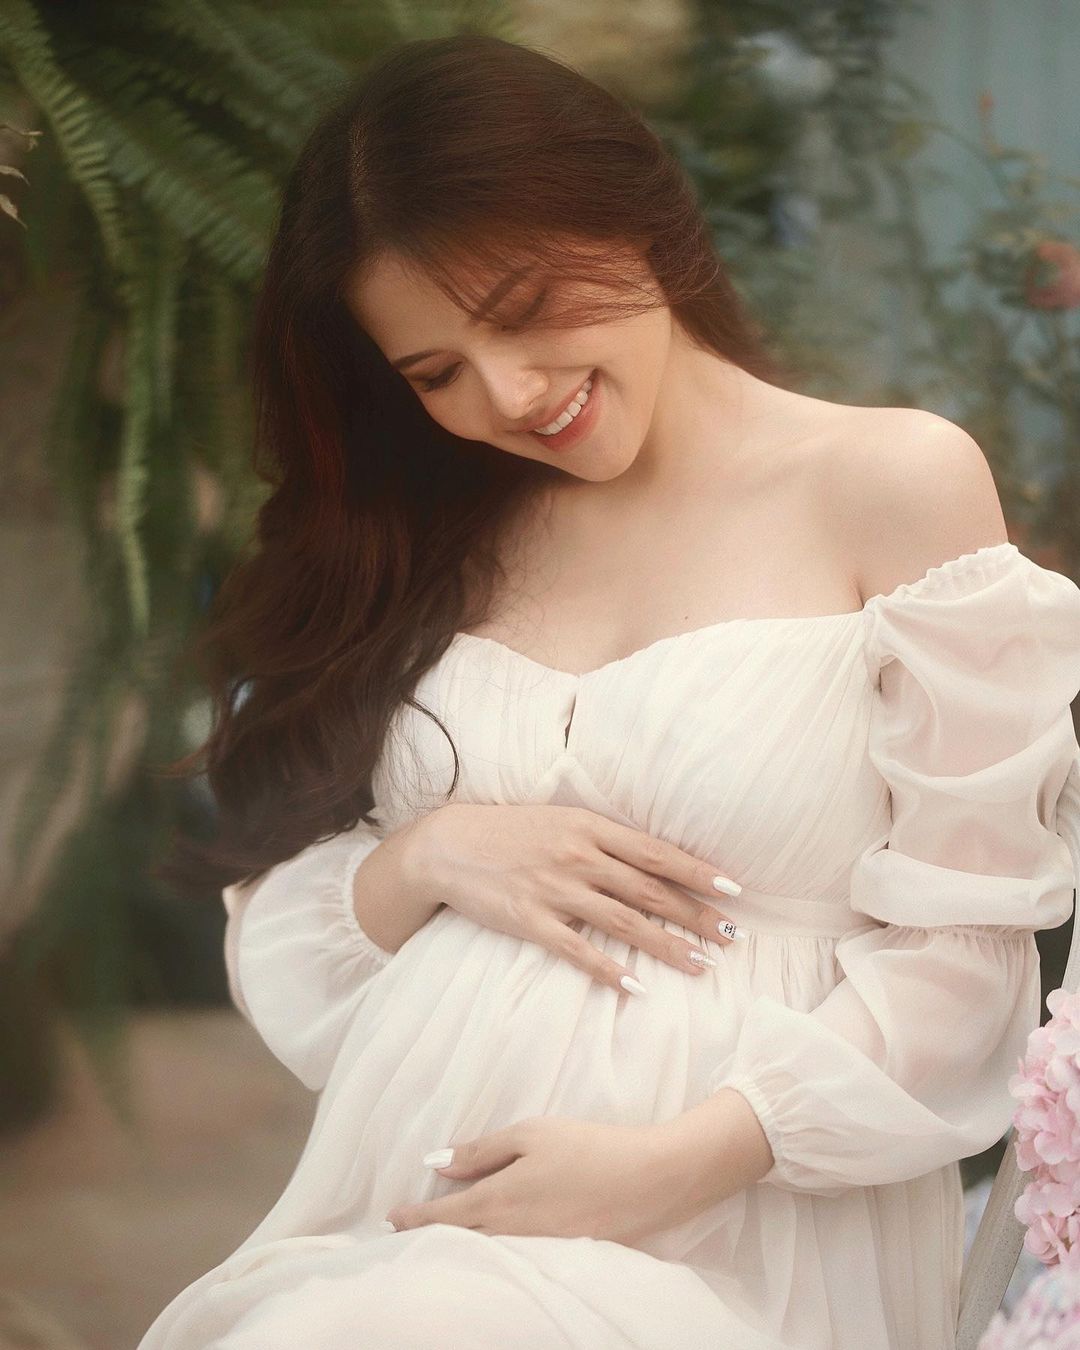 Phu nhân tập đoàn nghìn tỷ Phanh Lee xác nhận đang mang thai con gái - Ảnh 2